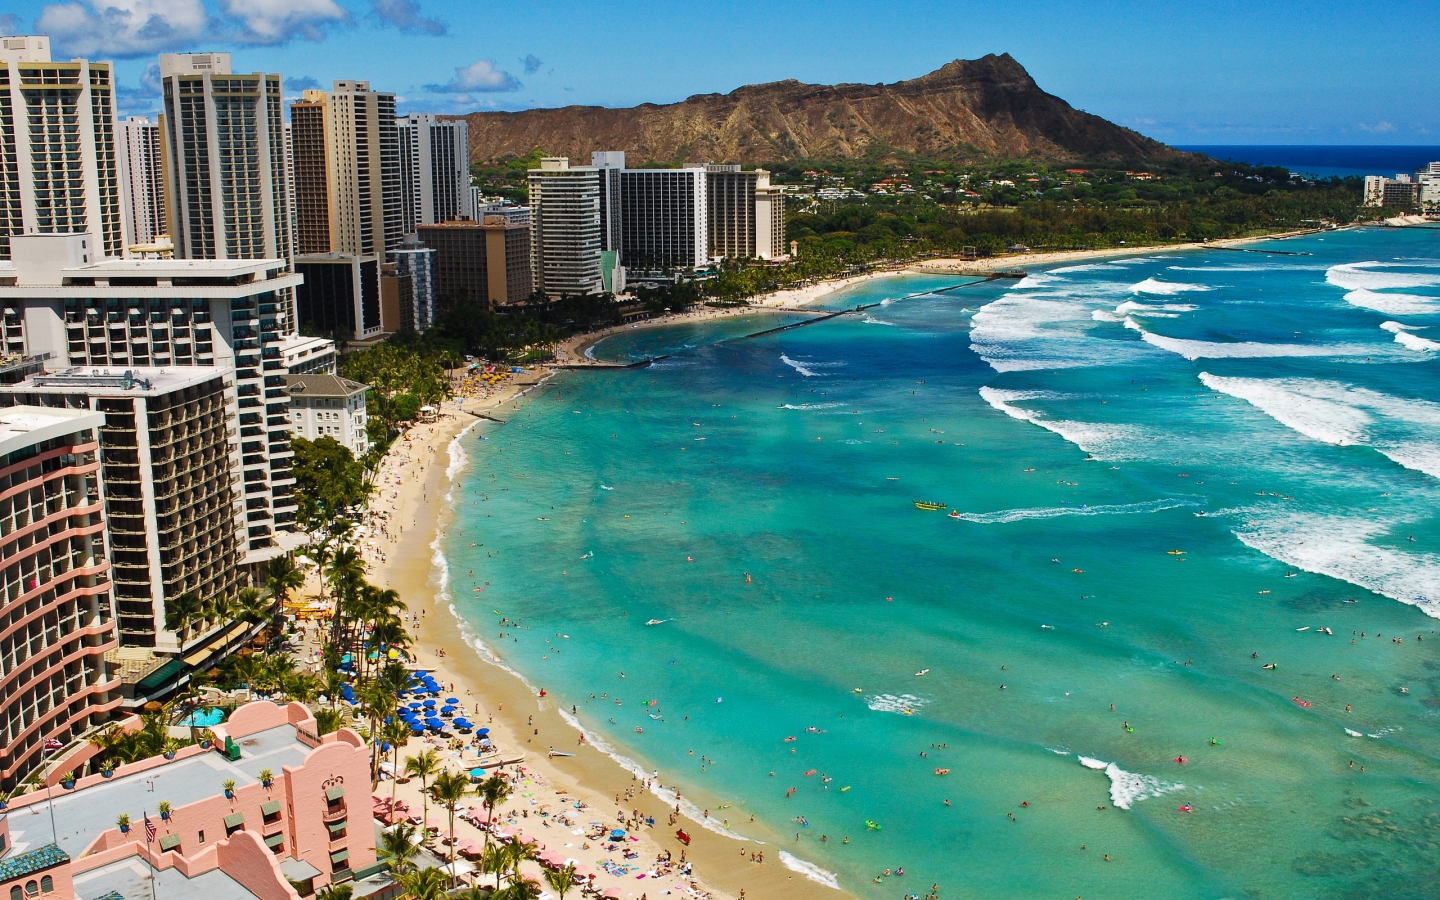 Waikiki Beach Hawaii, for 1440 x 900 widescreen resolution